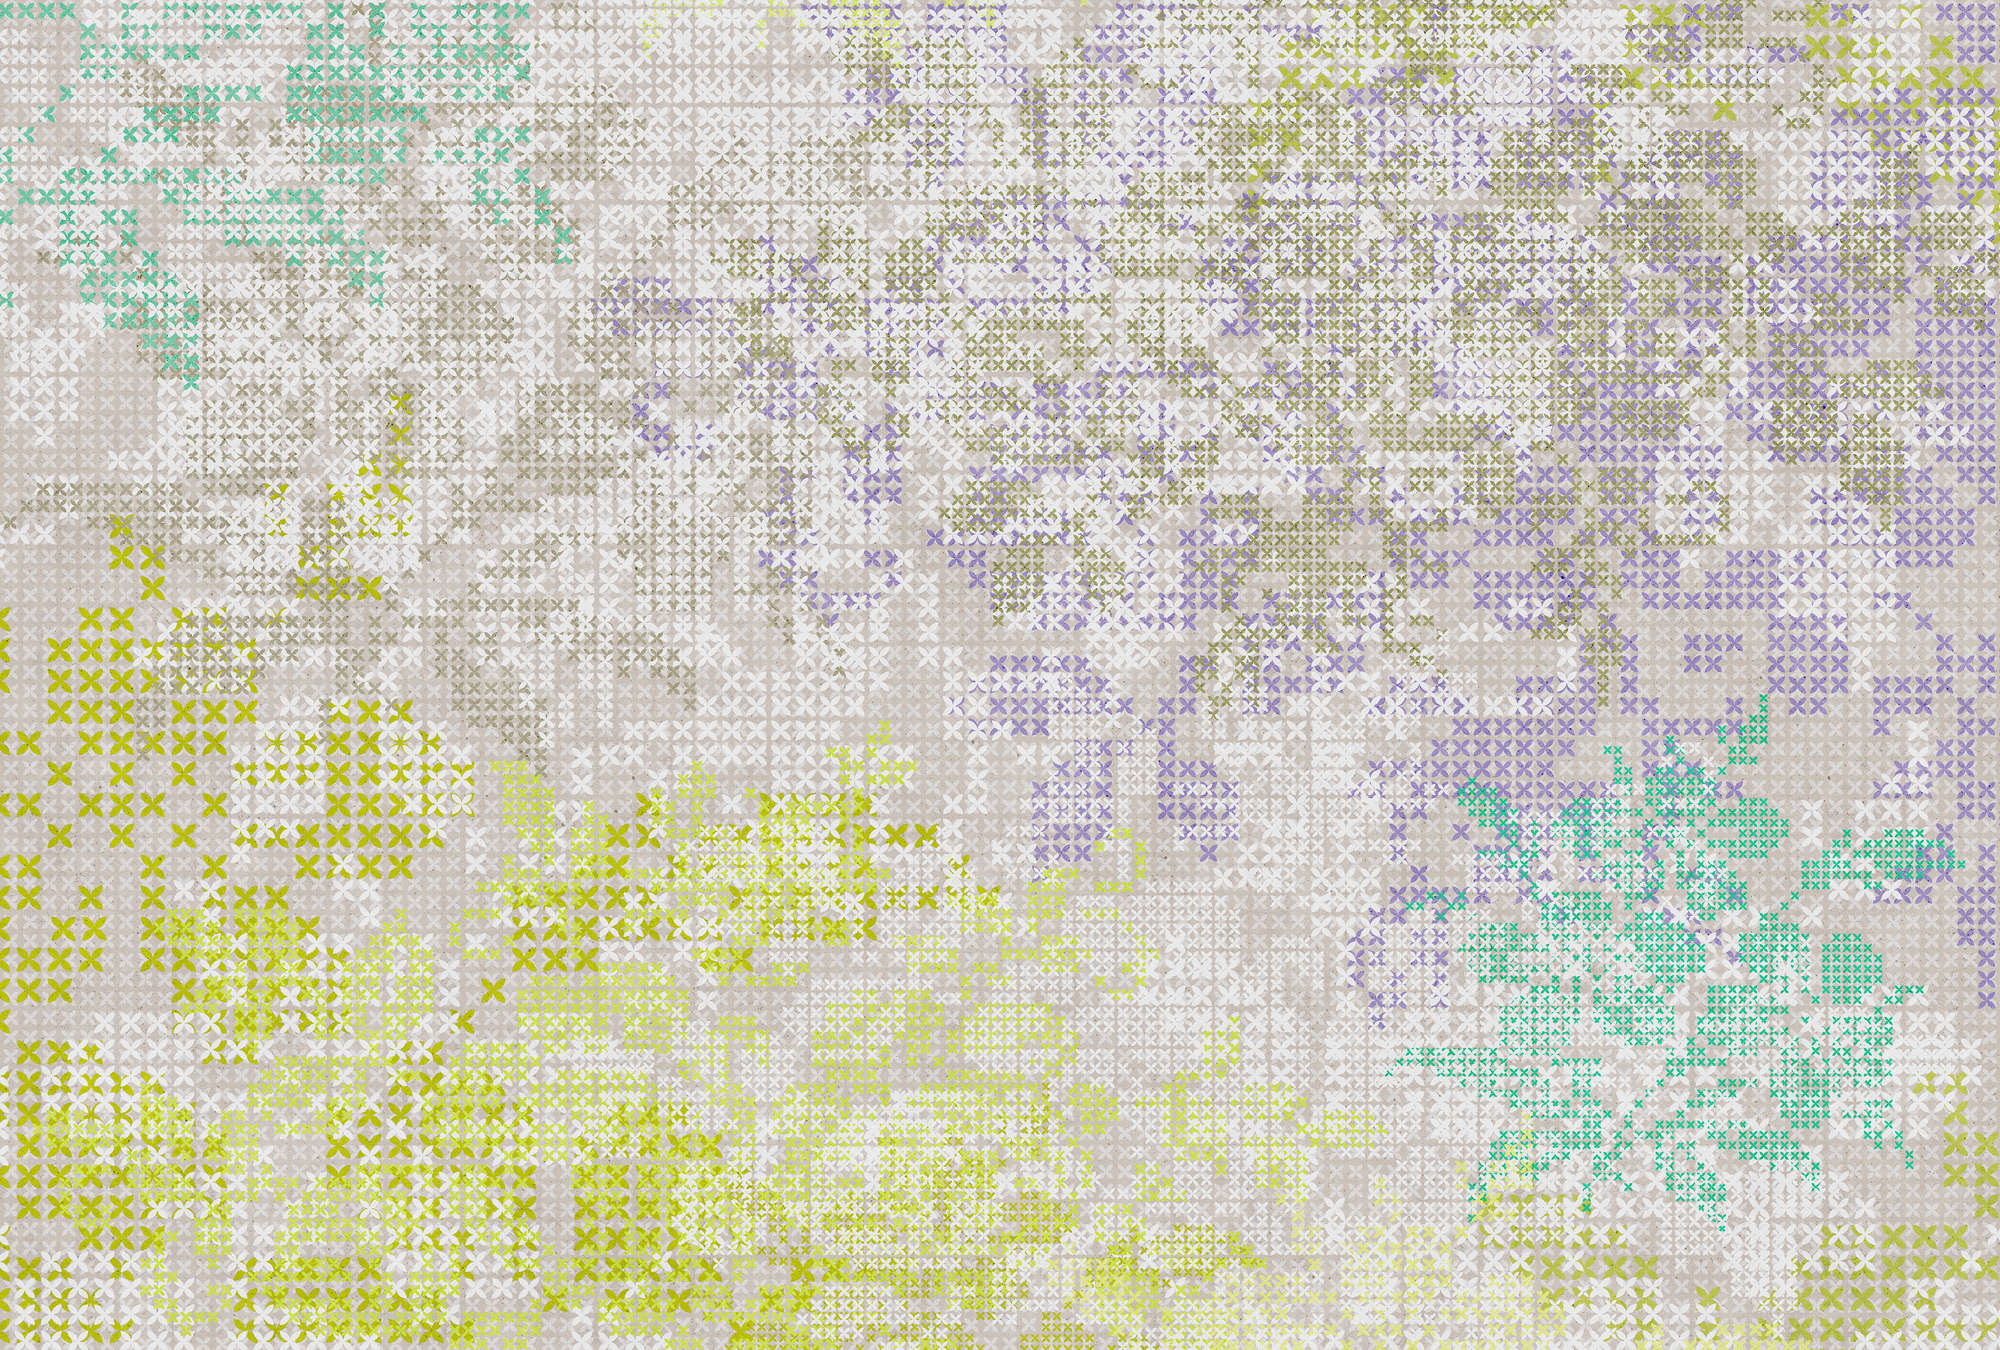             Carta da parati a fiori con motivo a pixel - Colorata, grigia
        